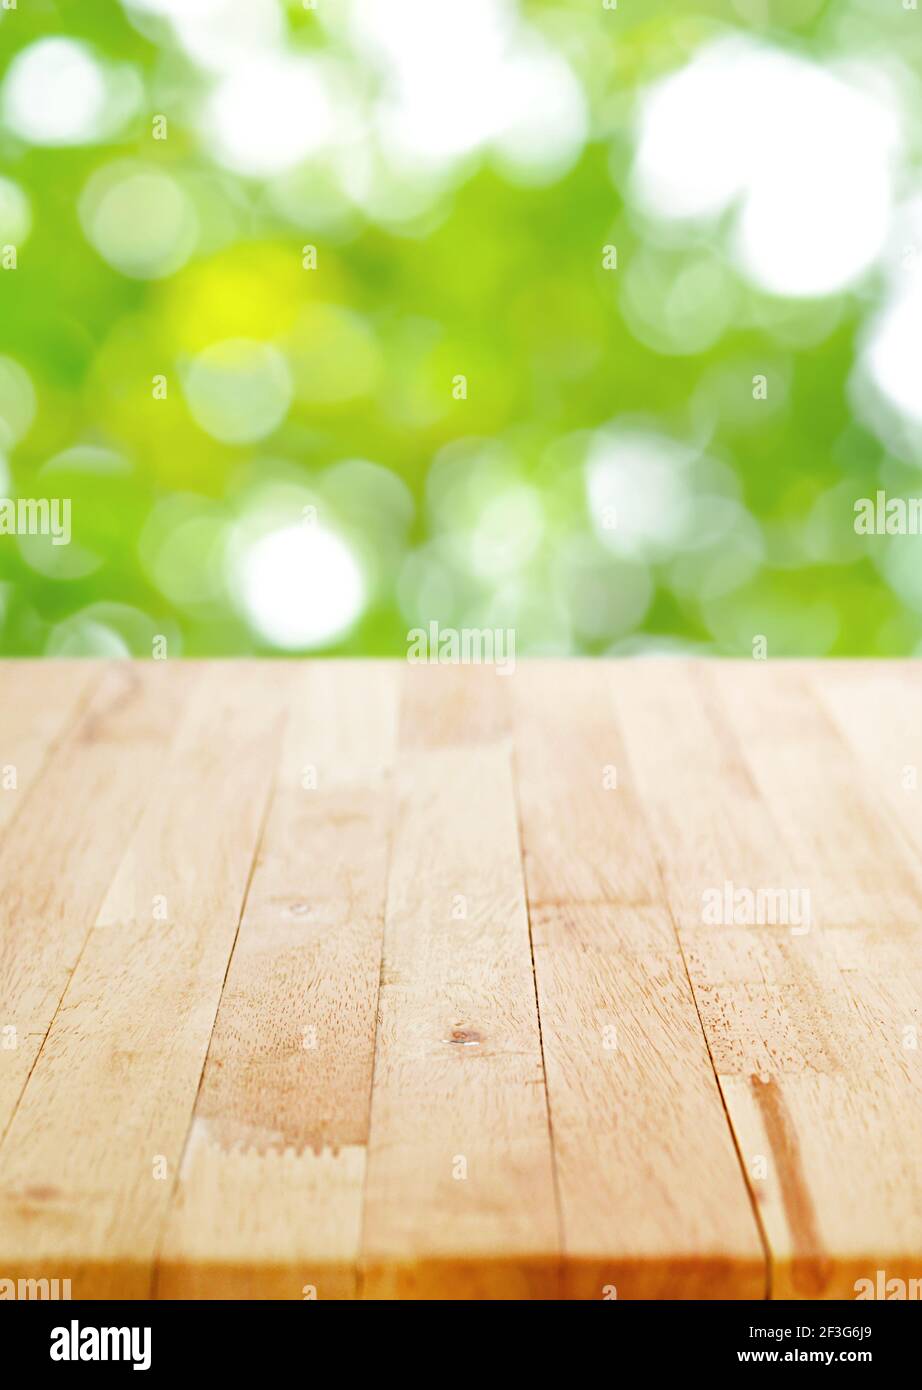 Plan de table en bois sur fond de bokeh vert flou, format d'affiche - peut être utilisé pour le montage ou l'affichage de vos produits Banque D'Images